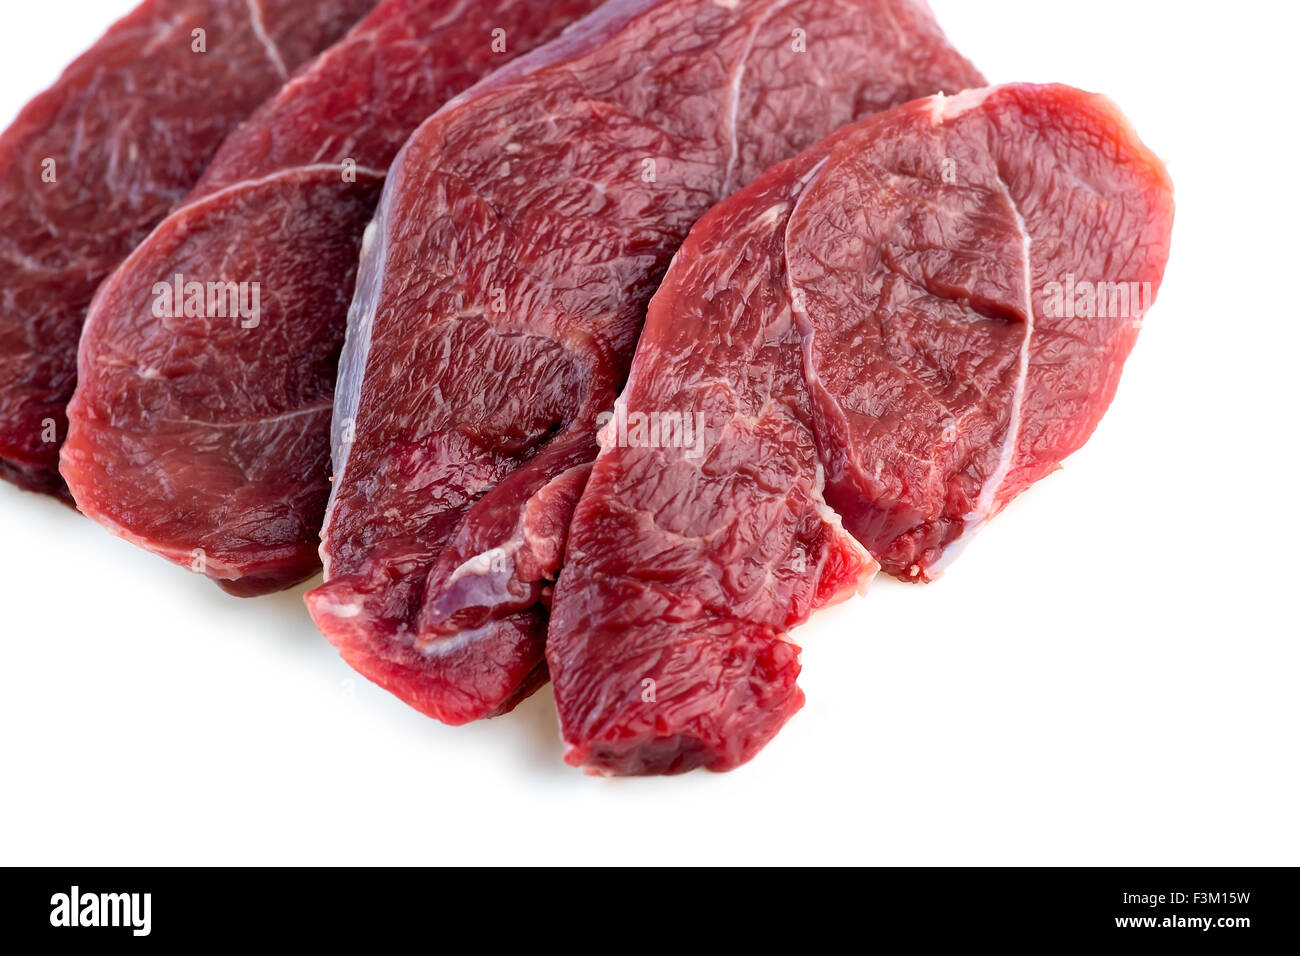 Foto de estudio de filetes de carne roja cruda aislado sobre un fondo blanco. Foto de stock